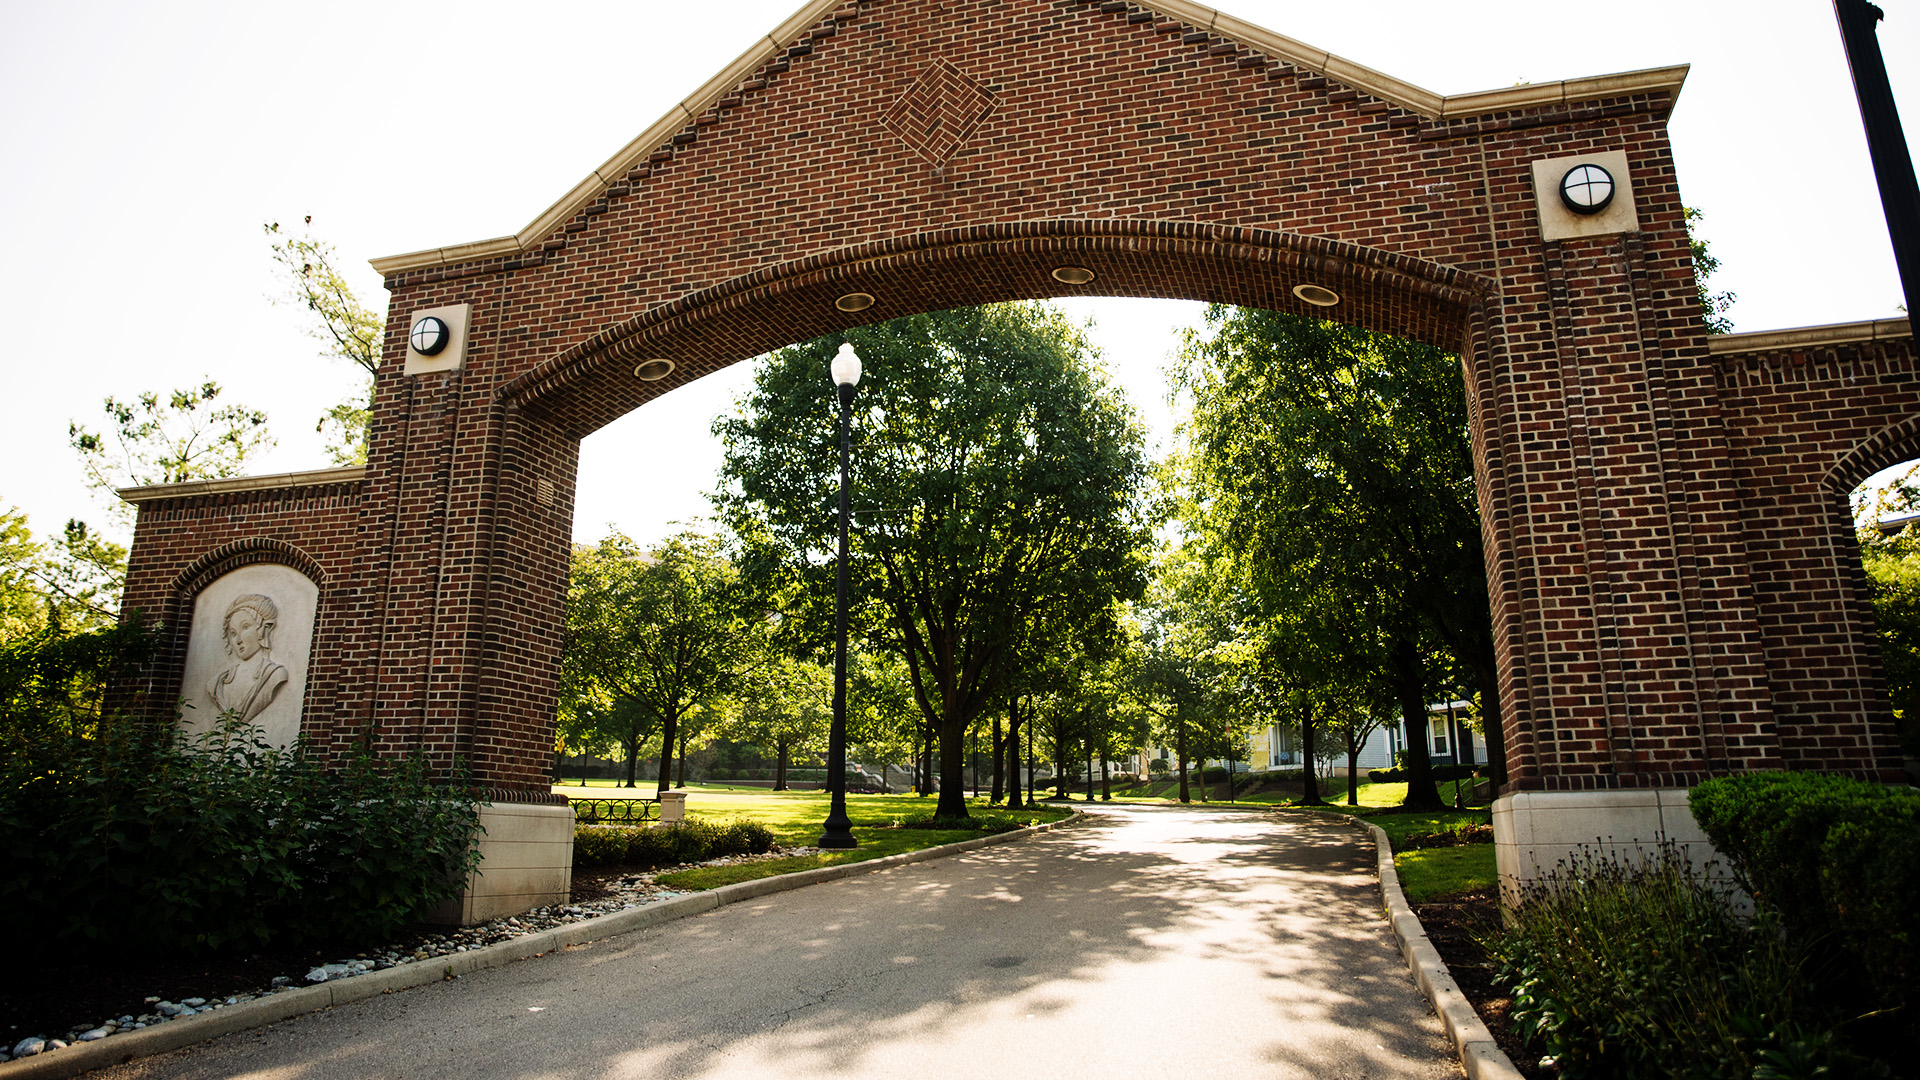 Background Image: Entrance Arch by University of Dayton